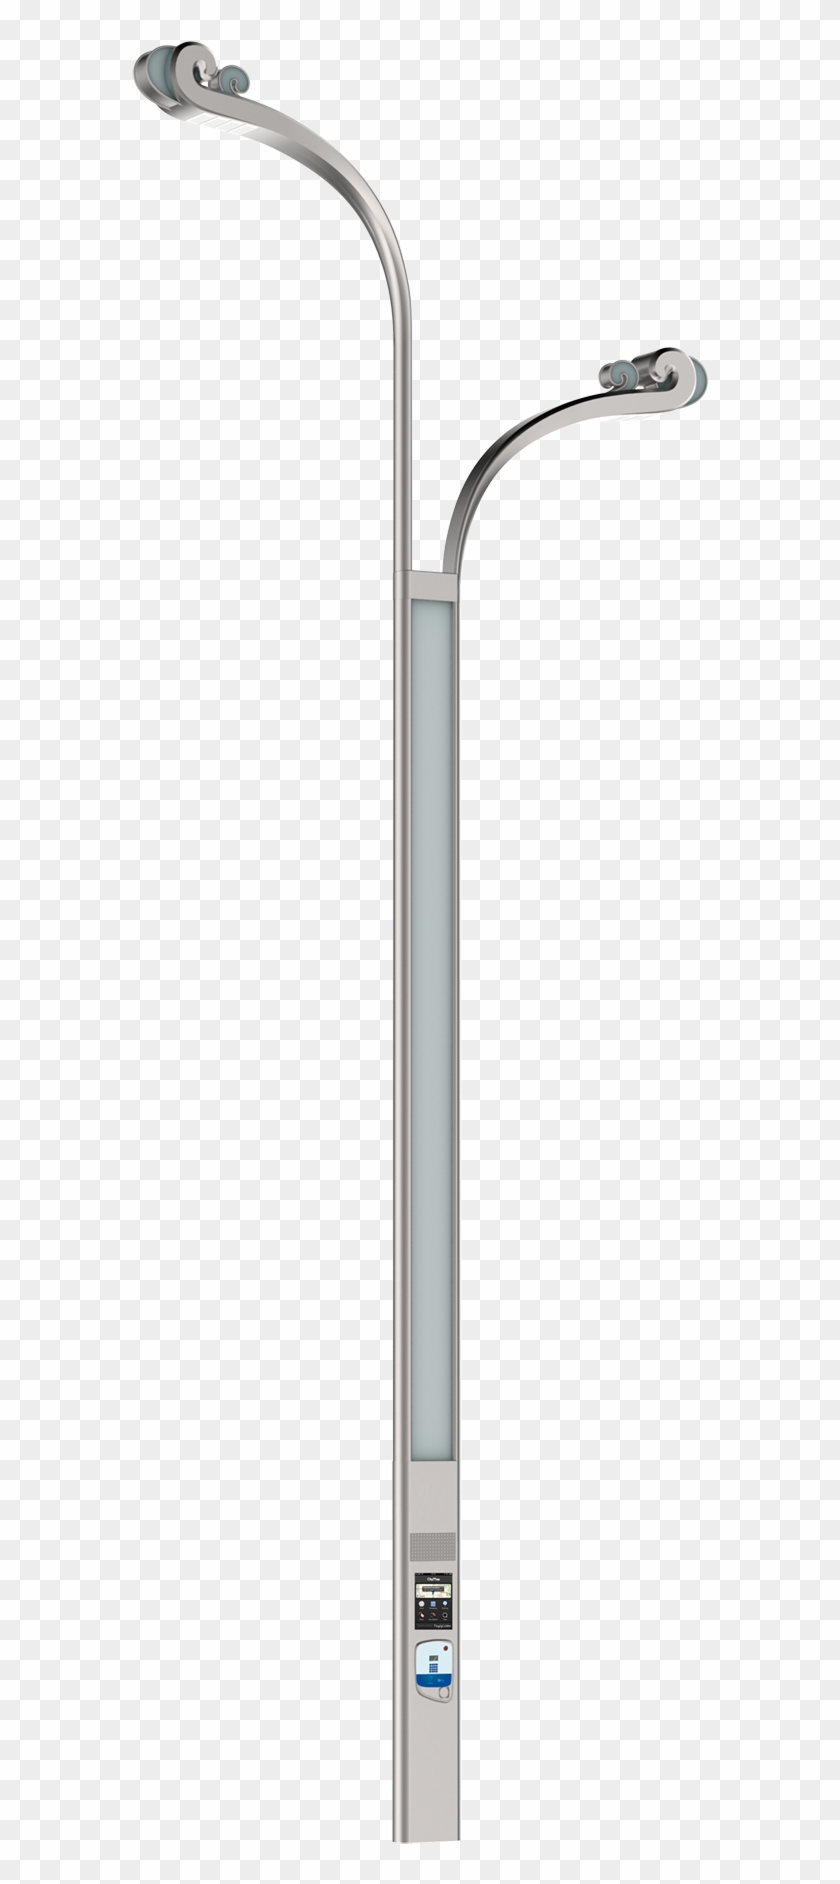 33 Beauty Street Light Poles For Street Light Poles - Mobile Phone #935216